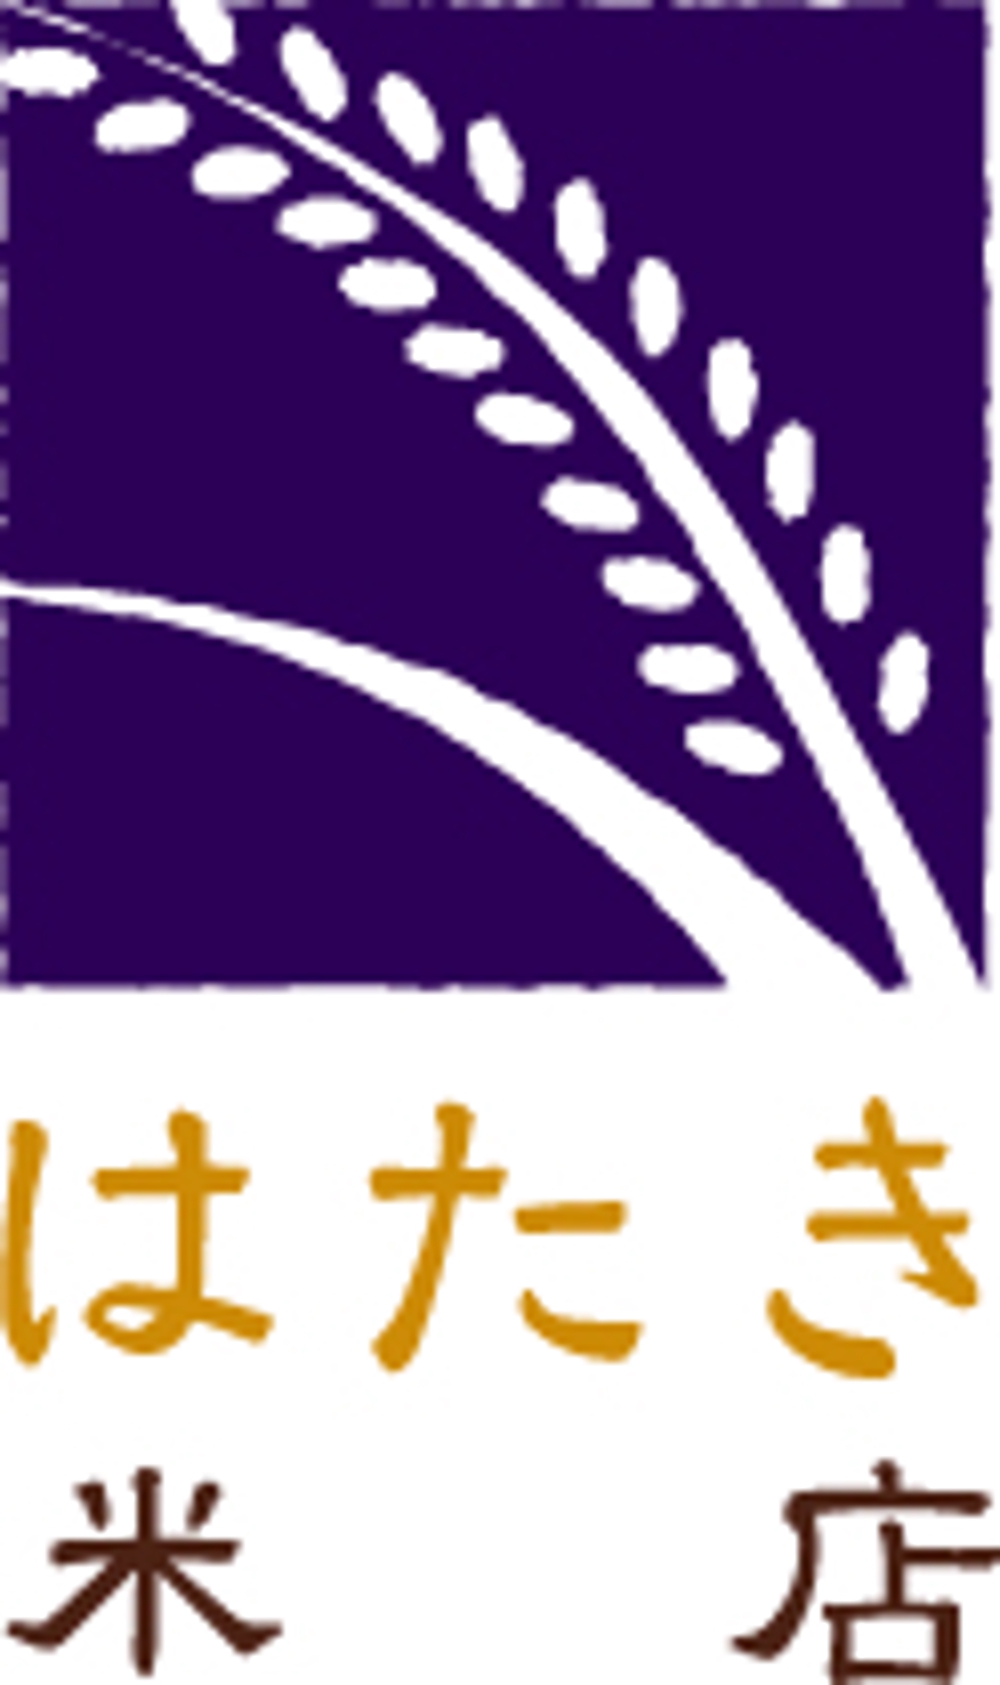 米店のロゴ